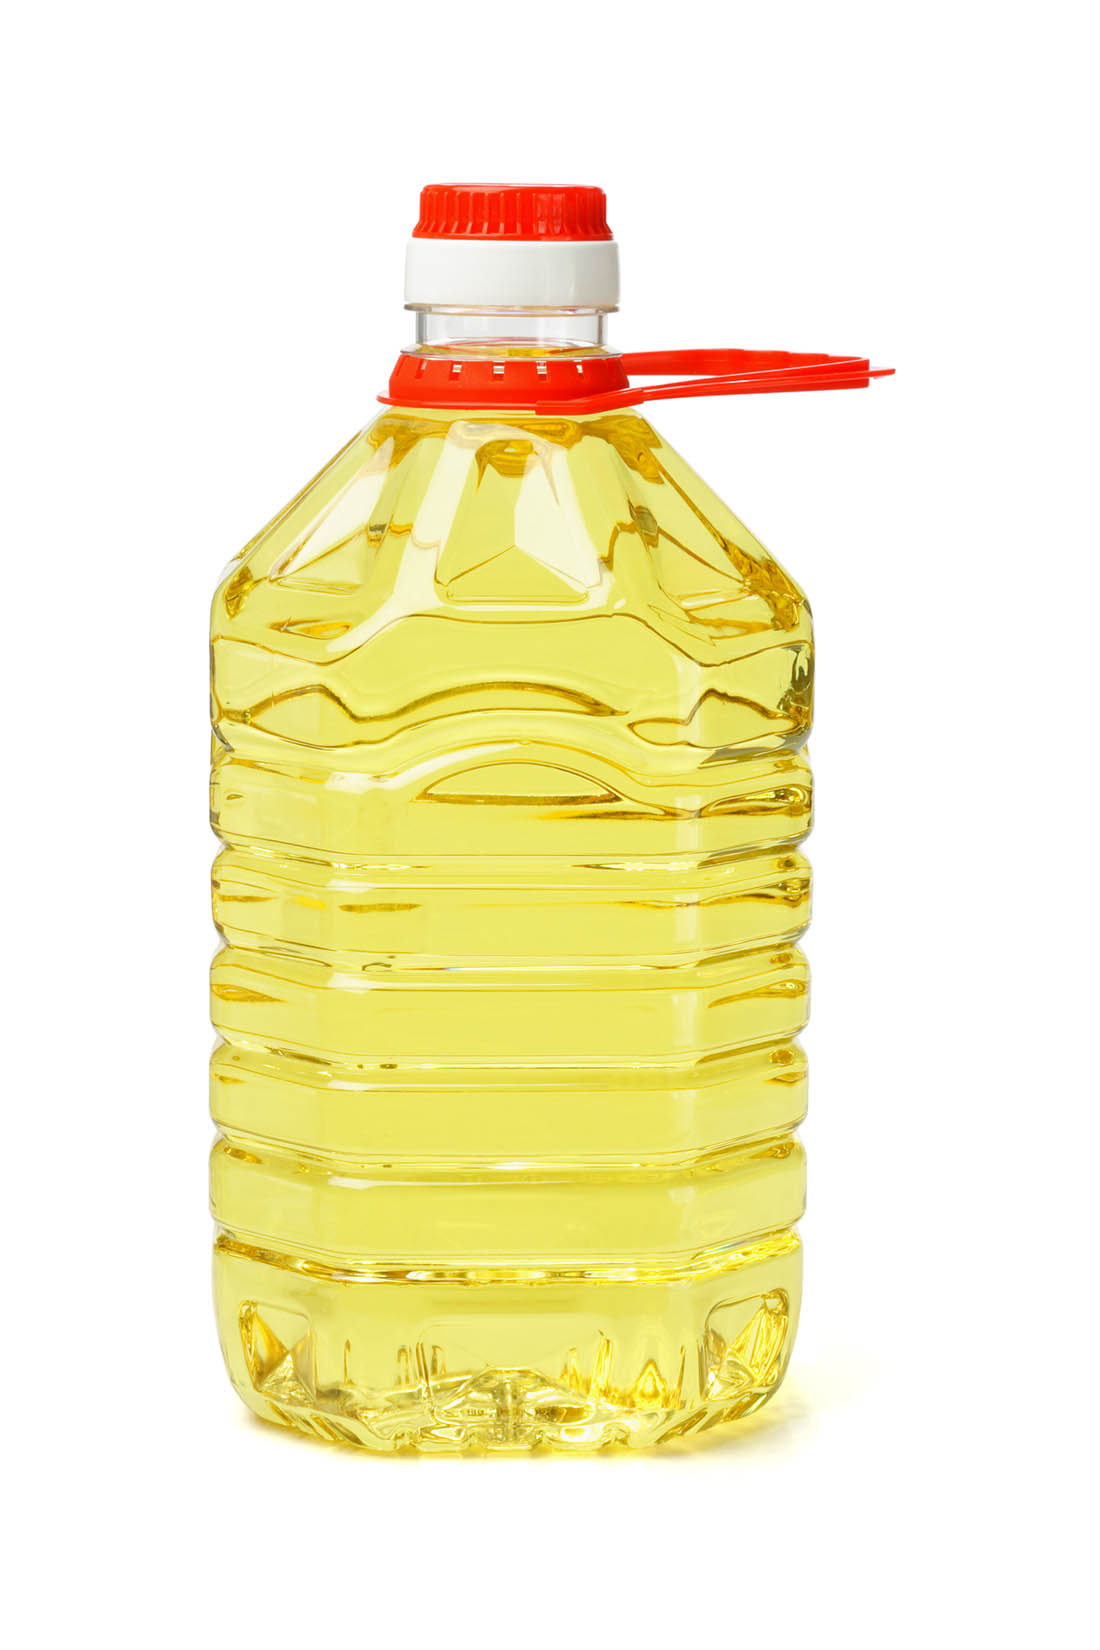 Bouteille en plastique d’huile de canola. L’huile de canola est une source d’huile à cuisson, de margarine, de vinaigrette, et de graisse alimentaire végétale.